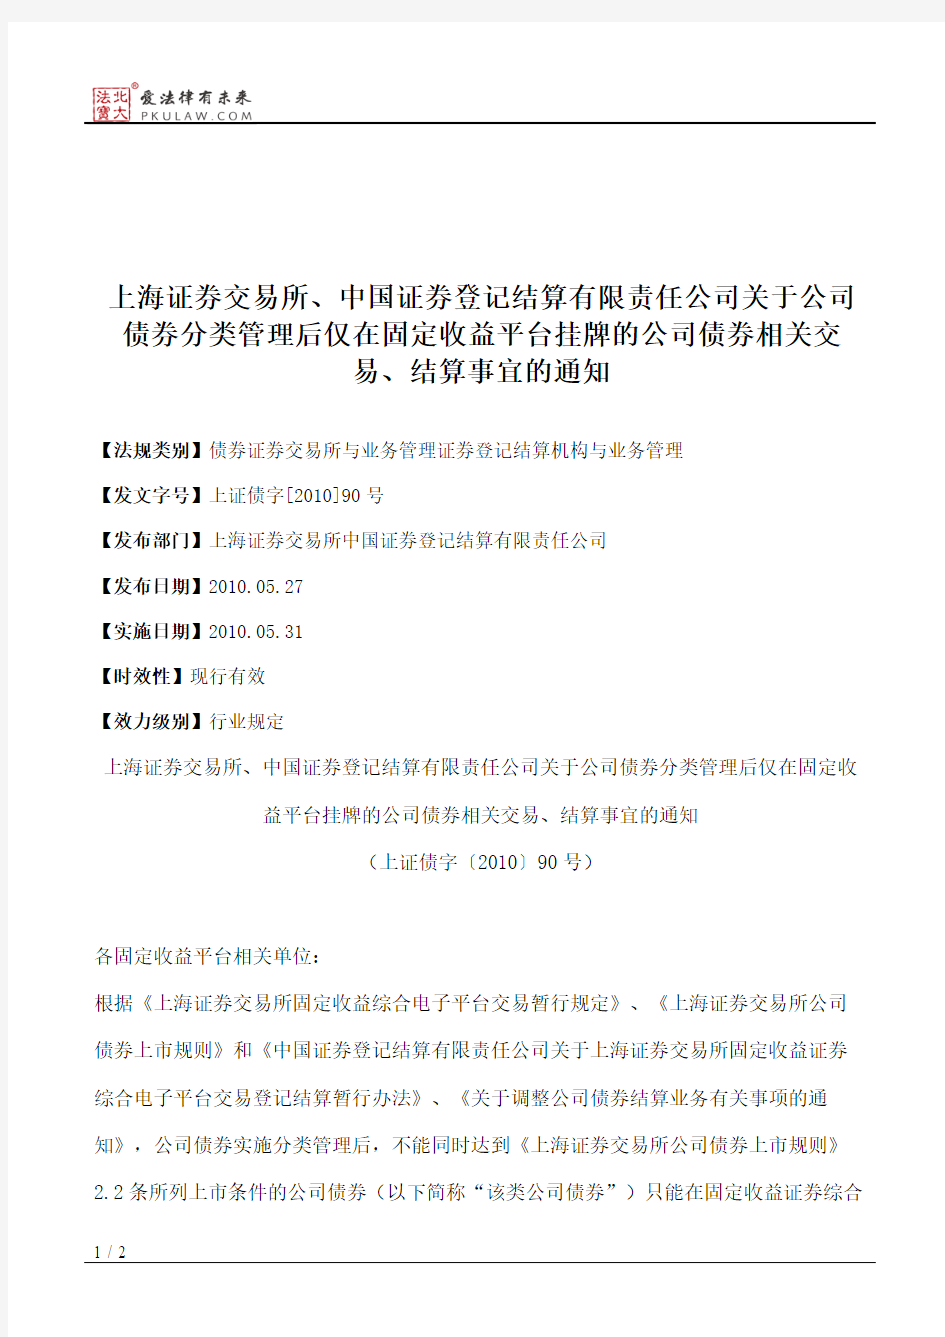 上海证券交易所、中国证券登记结算有限责任公司关于公司债券分类